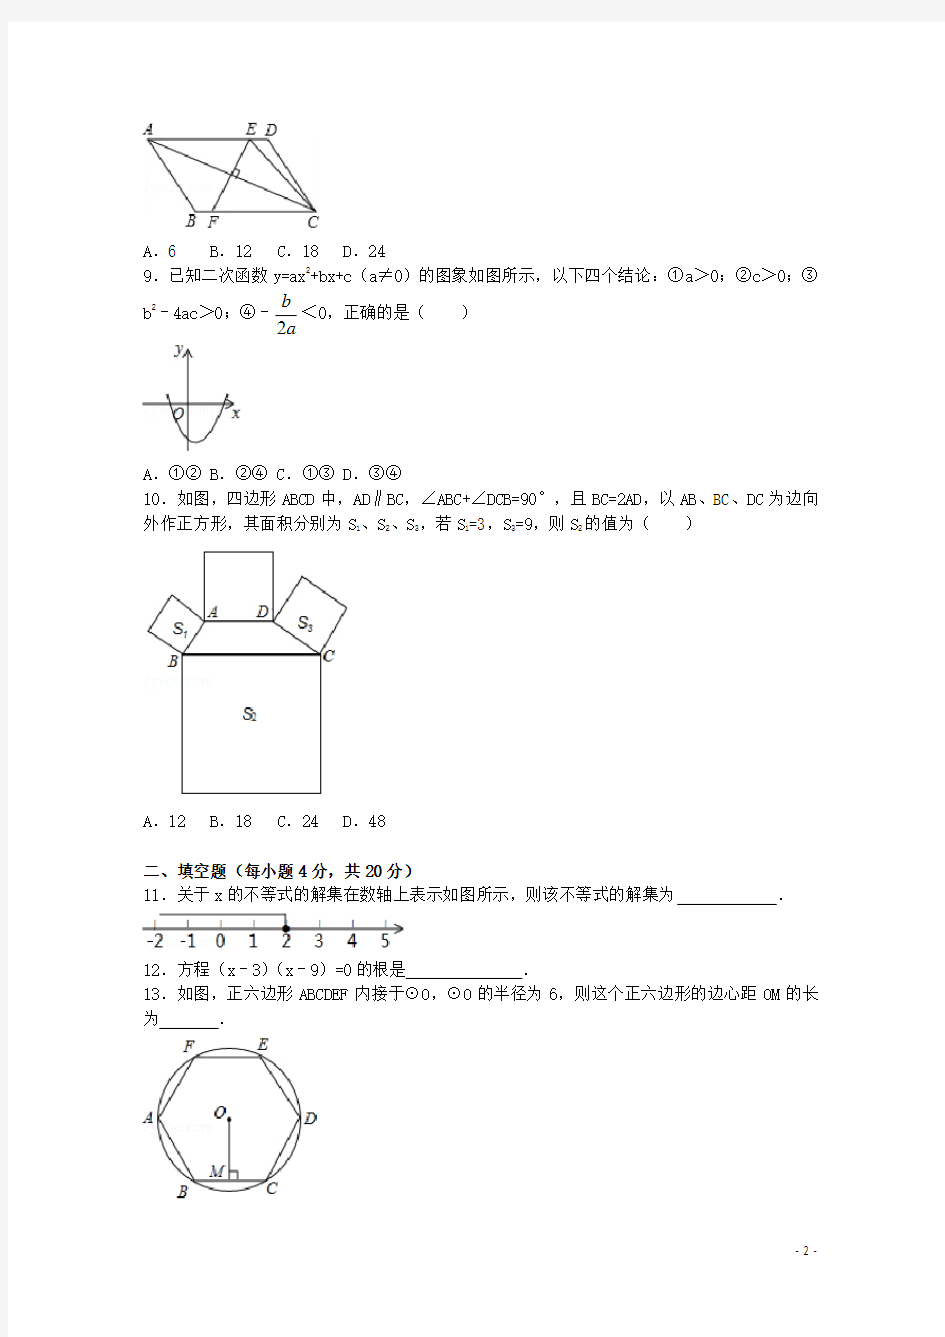 2017年贵州省贵阳市中考数学试卷(含答案解析版)